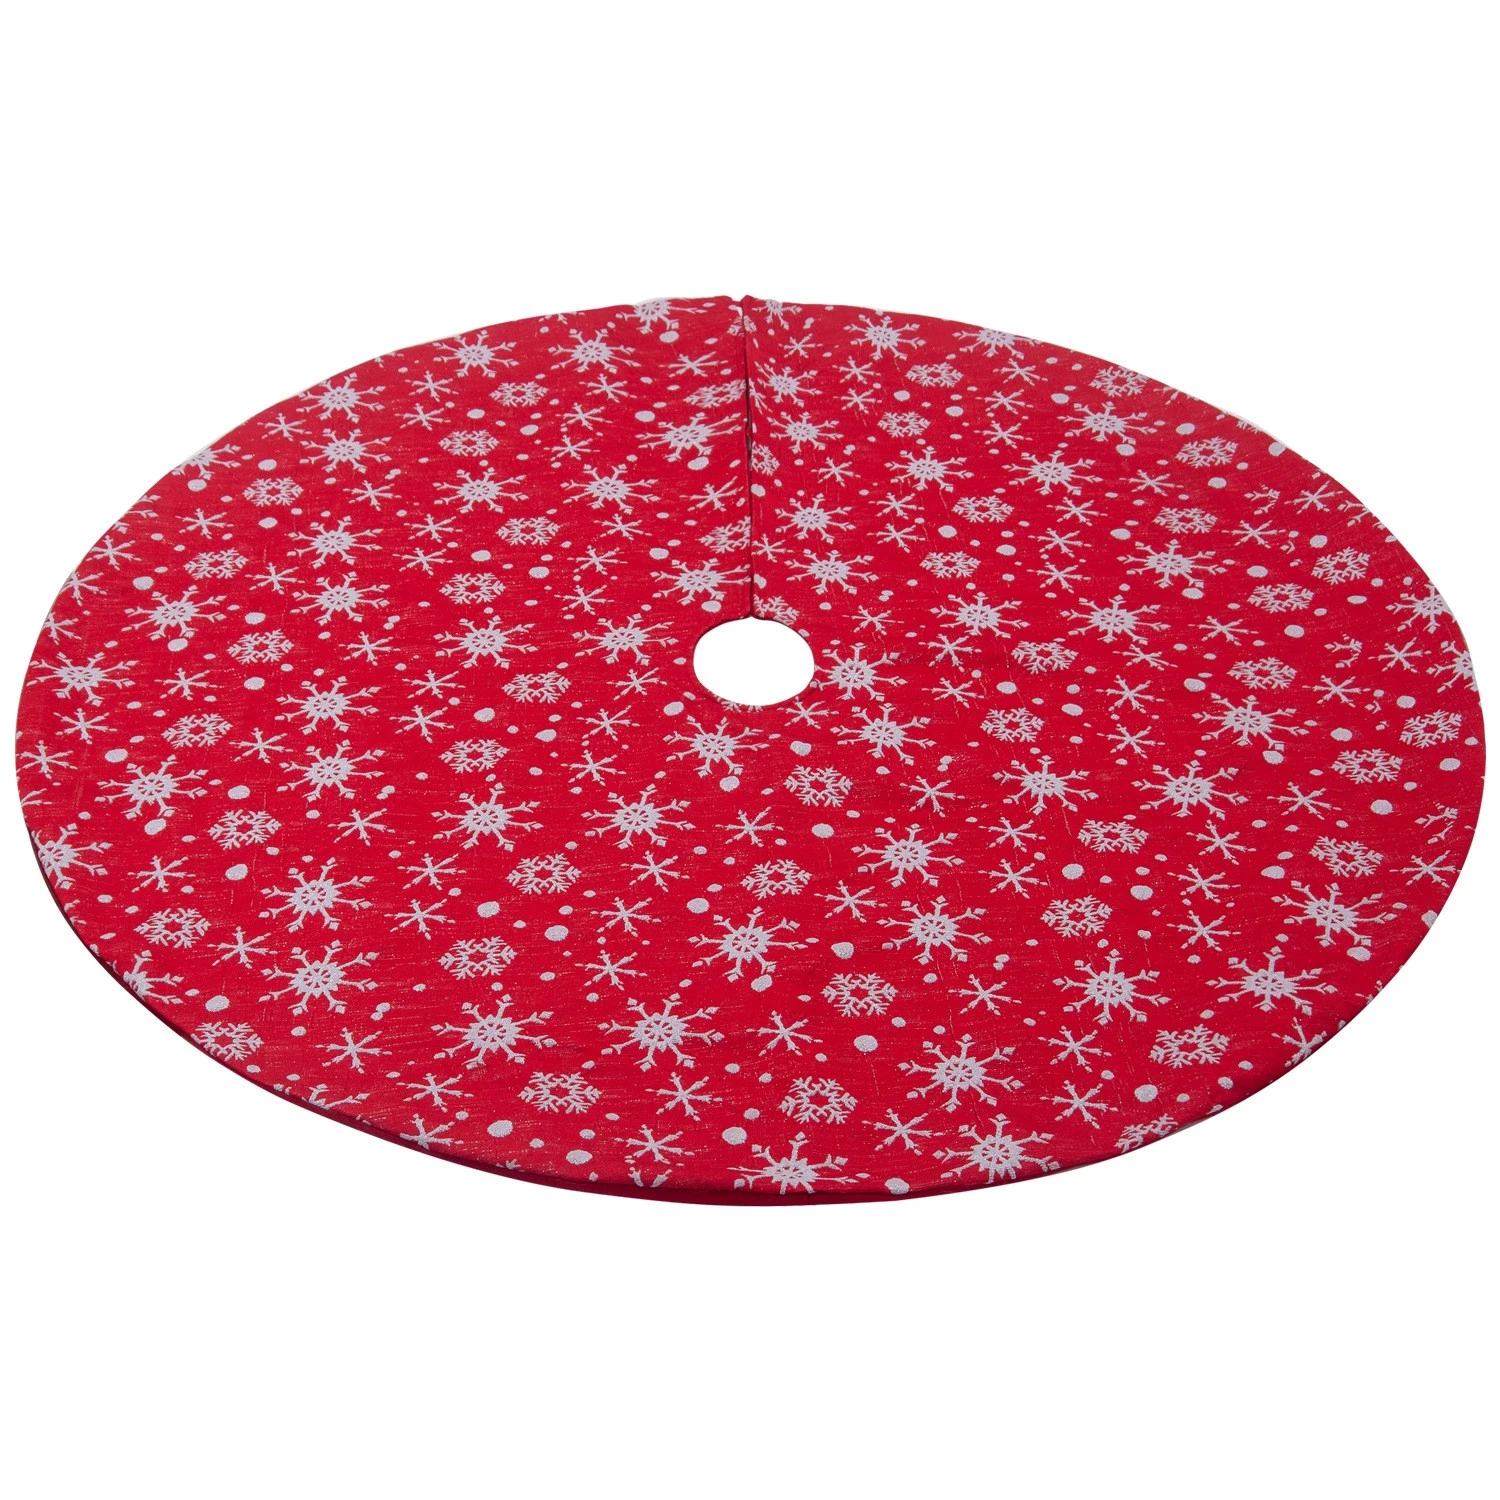 中国 Christmas decoration supplier 48 inch red DIY felt christmas tree skirt burlap 制造商